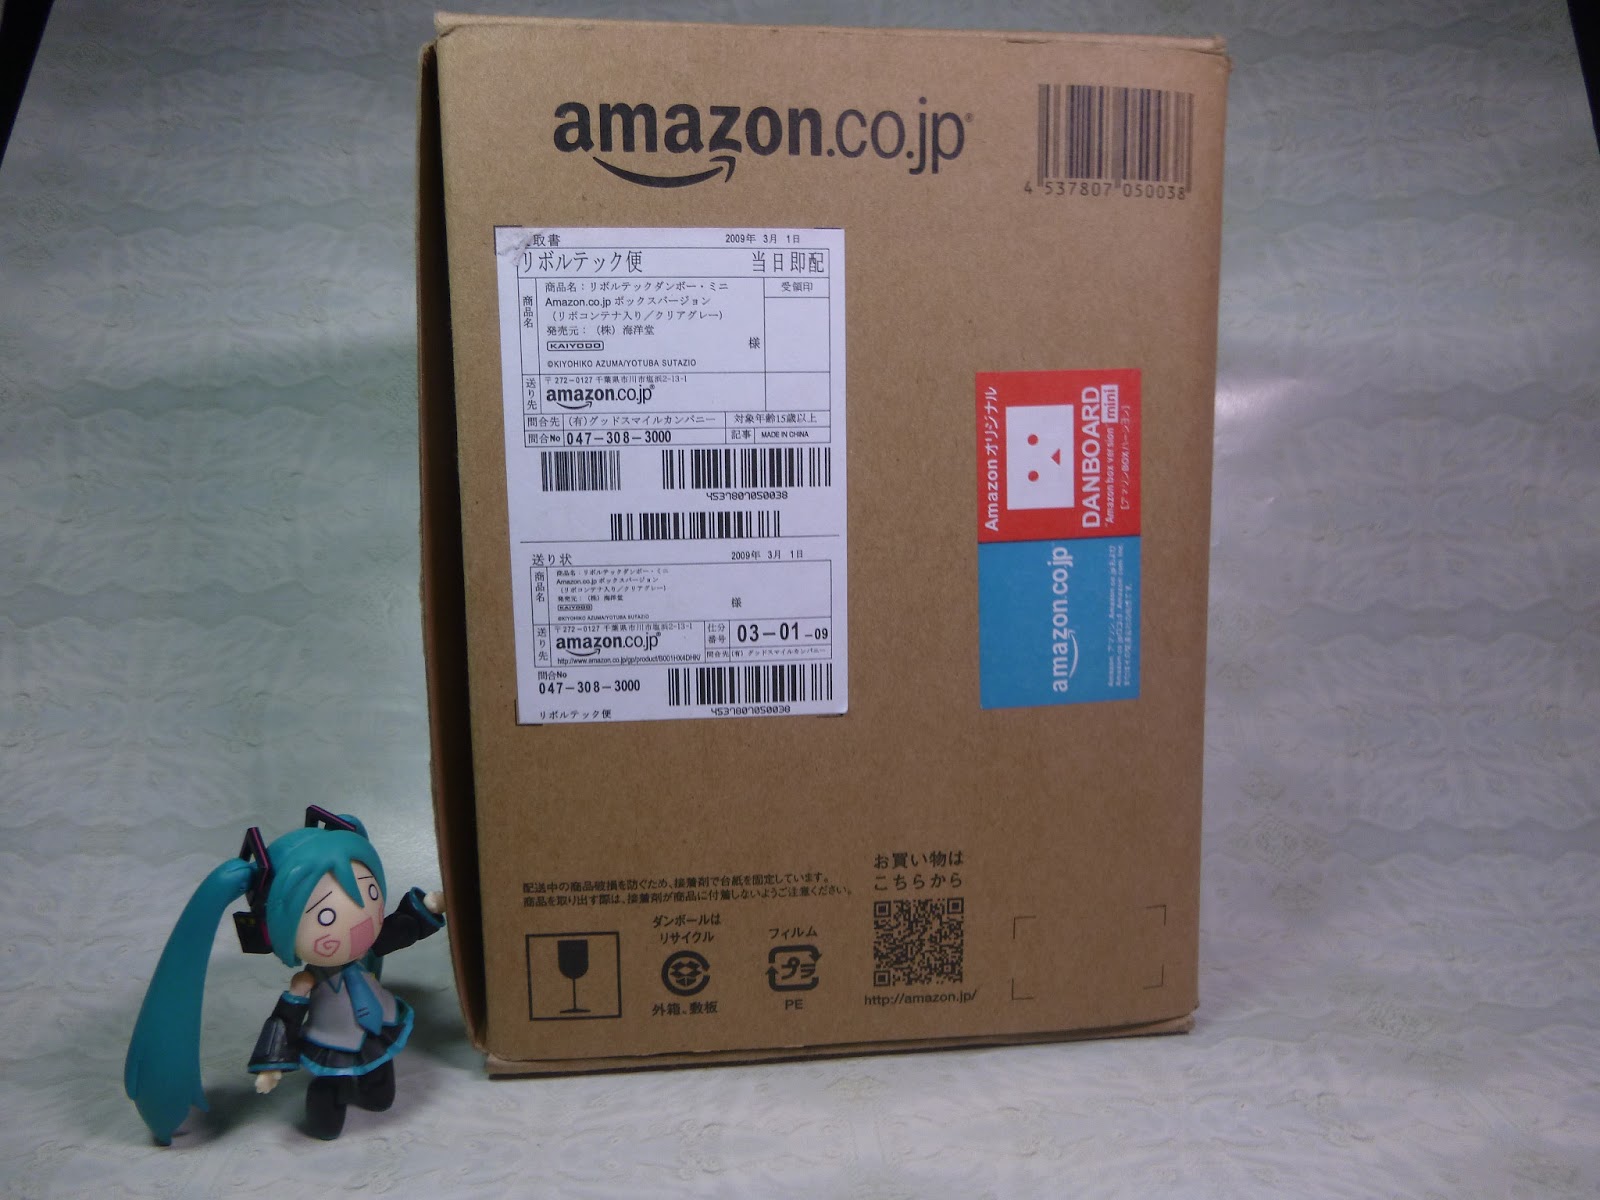 / Amazon.co.jp Box Version Danbo Yotsuba& Revoltech Danboard Mini 